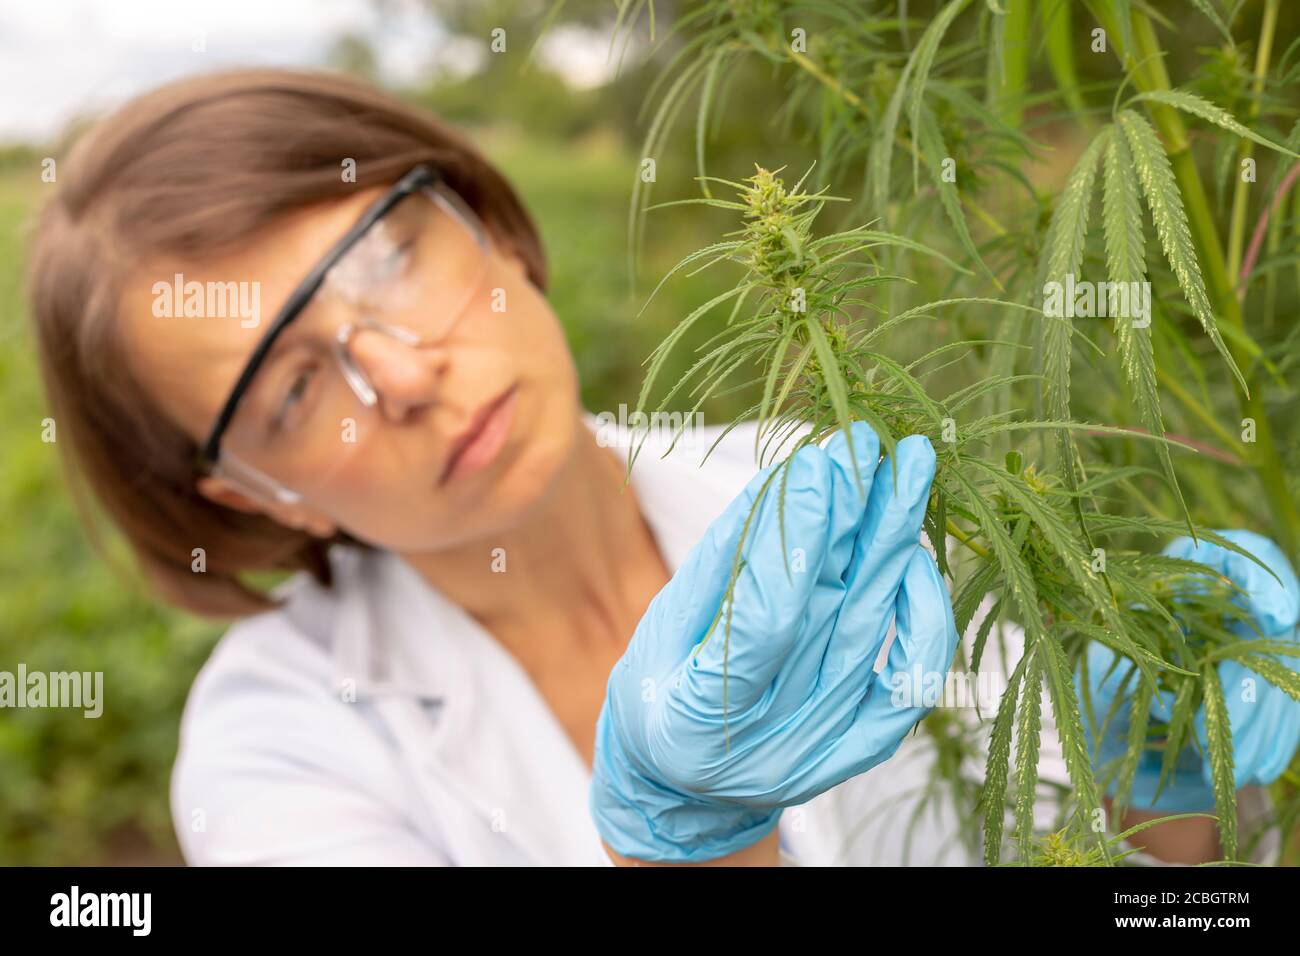 Ritratto di uno scienziato in una maschera che esamina le foglie di canapa. Pianta di cannabis come medicina. Foto Stock